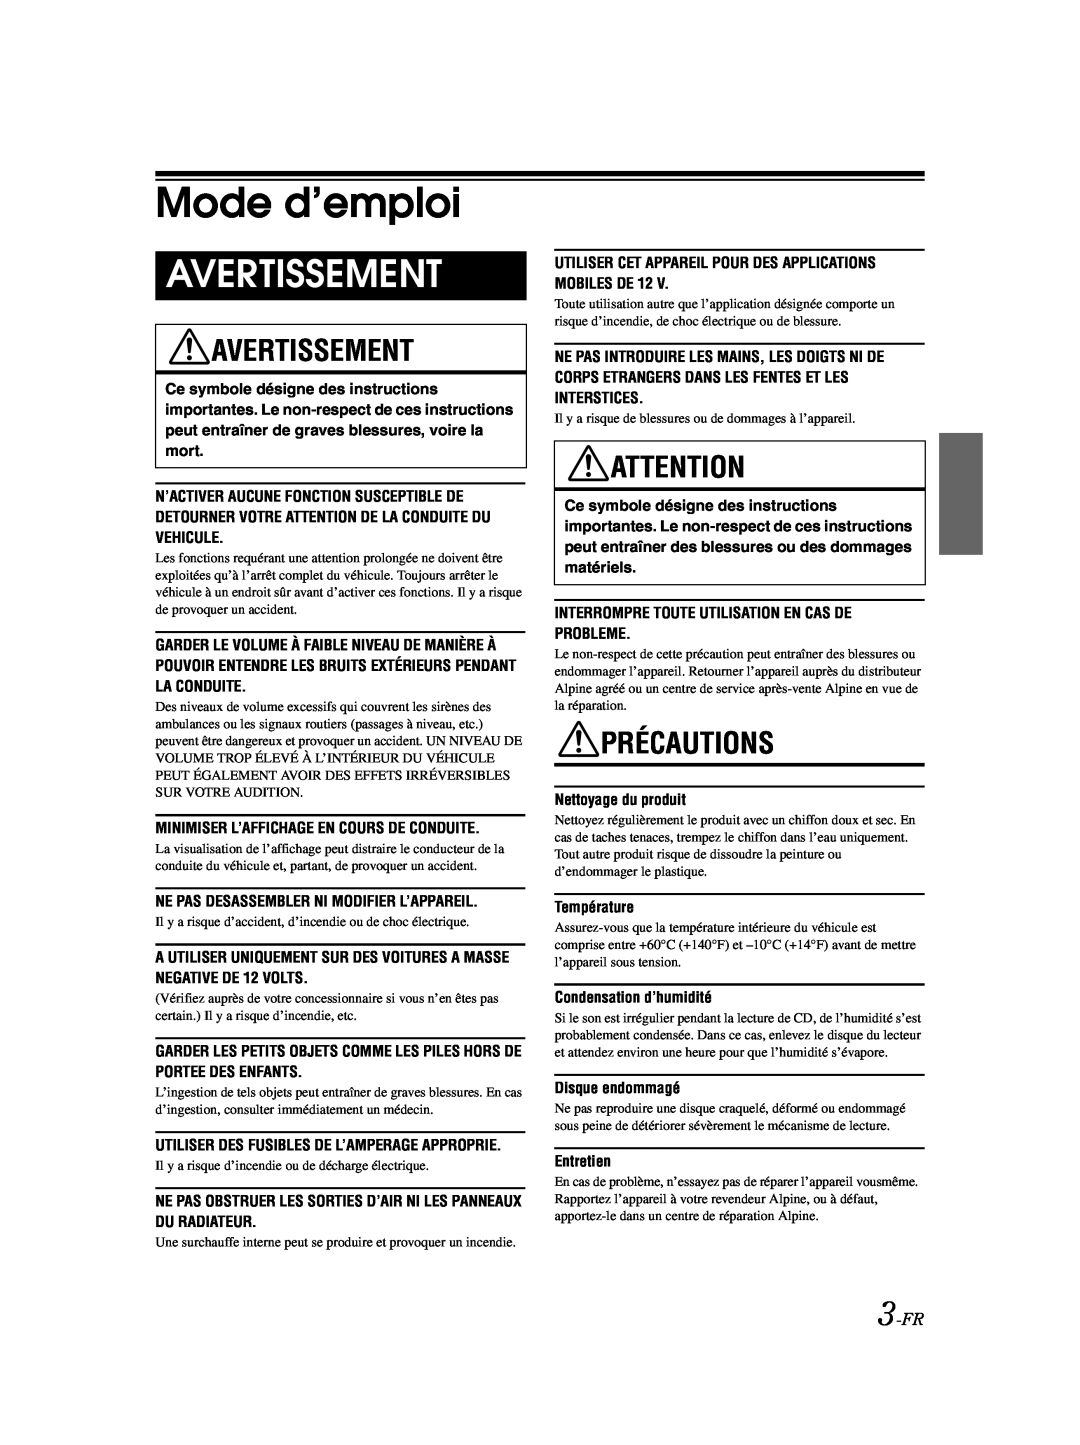 Alpine CDE-9873 owner manual Mode d’emploi, Avertissement, Précautions, 3-FR 